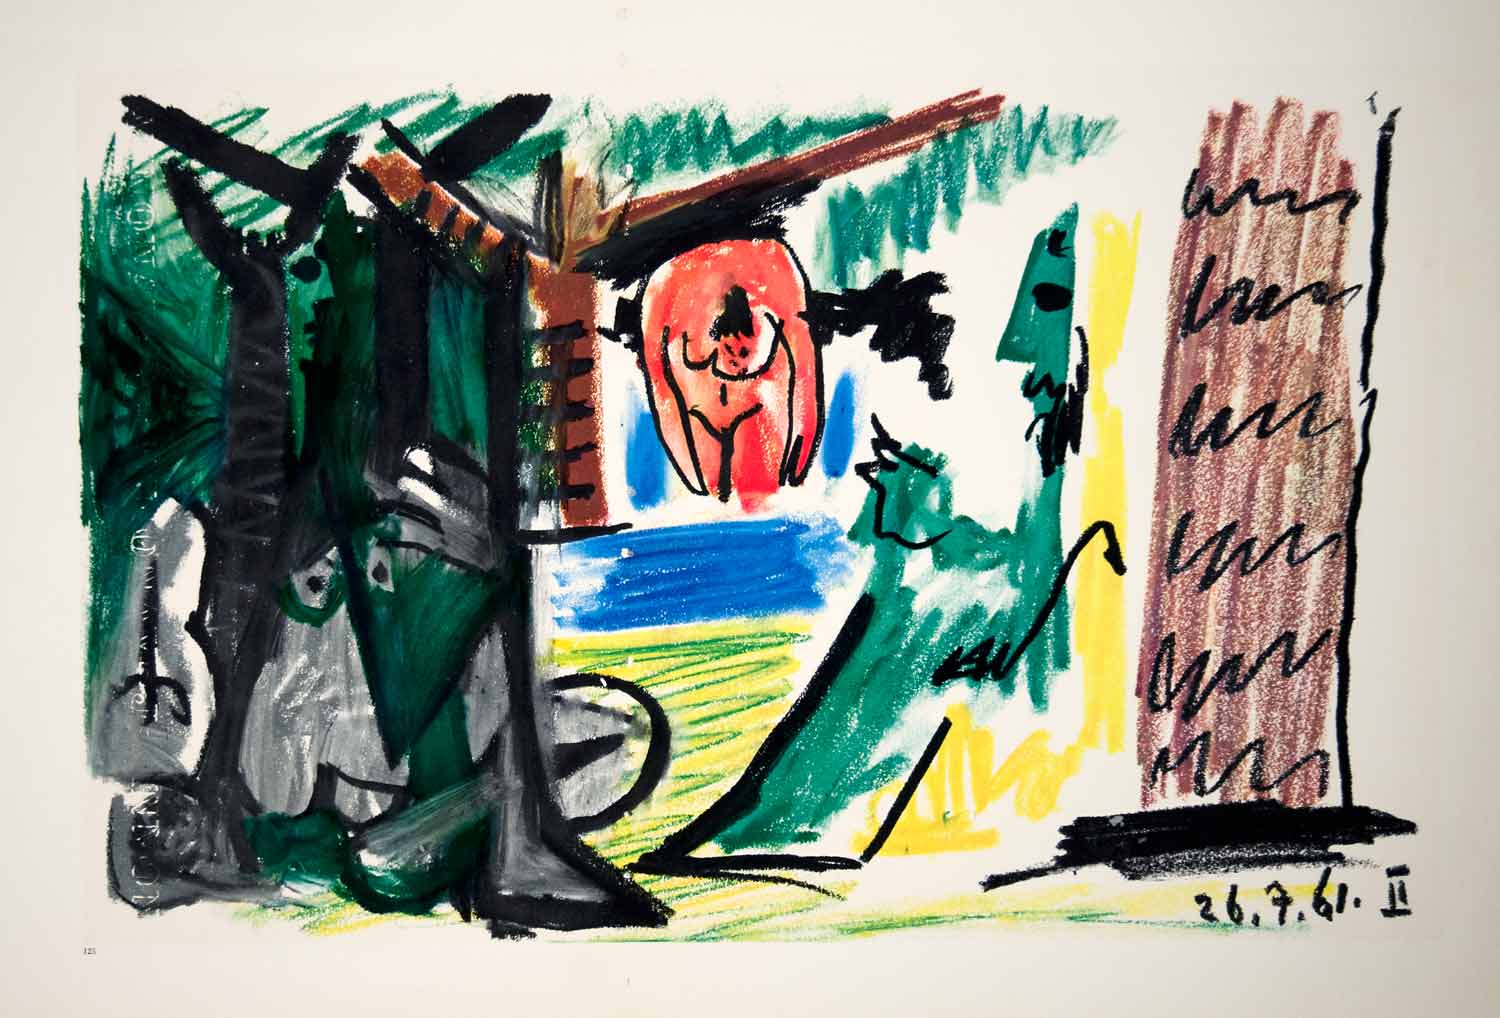 1962 Photolithograph Picasso Nude Bather Art Dejeuner sur l'herbe Manet 26.7.61